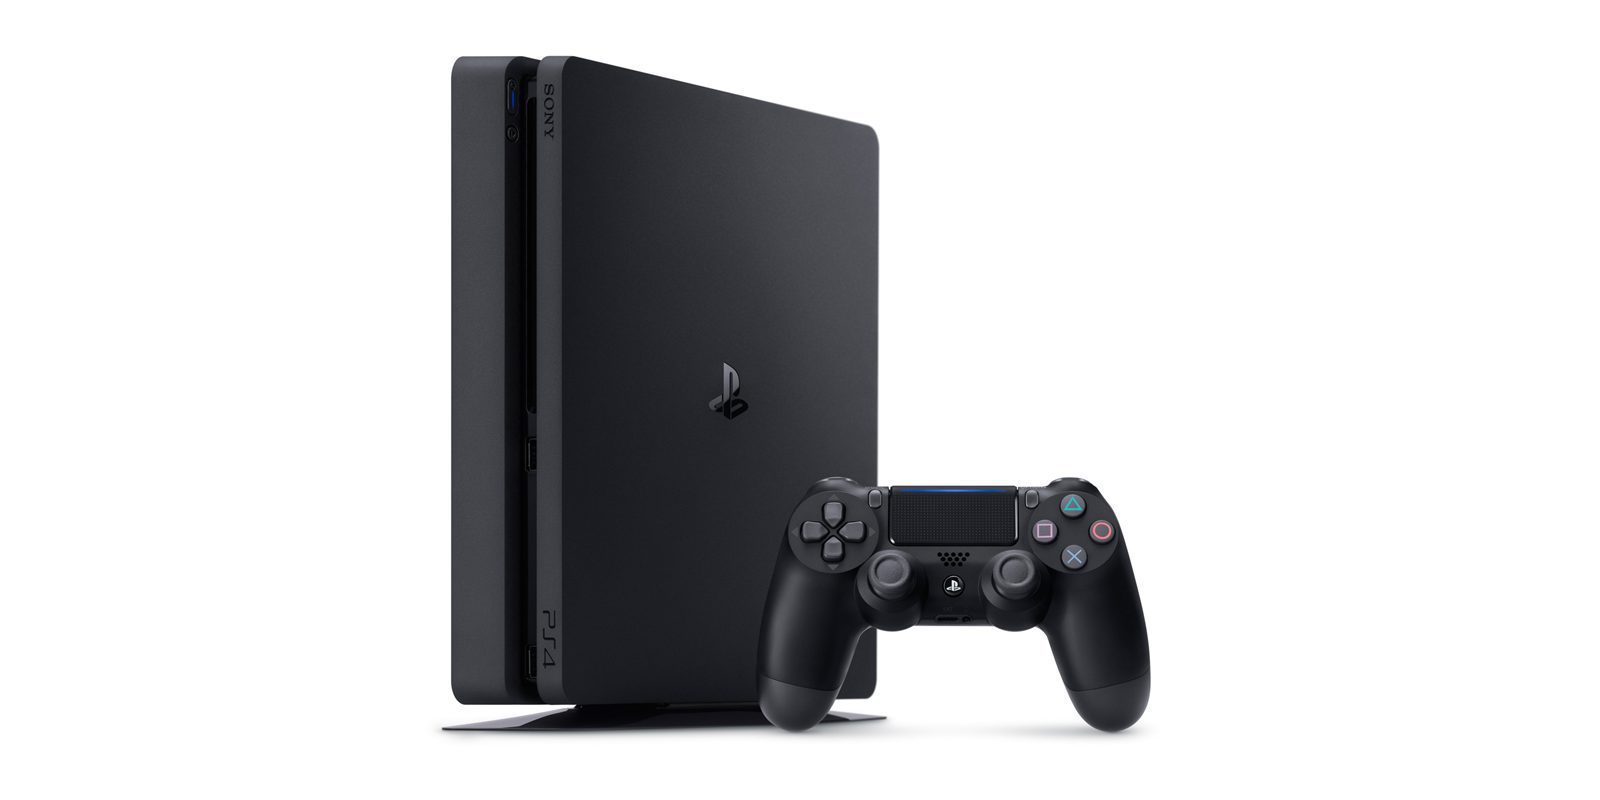 Aparecen rumores de una posible revisión de PlayStation 4 Slim